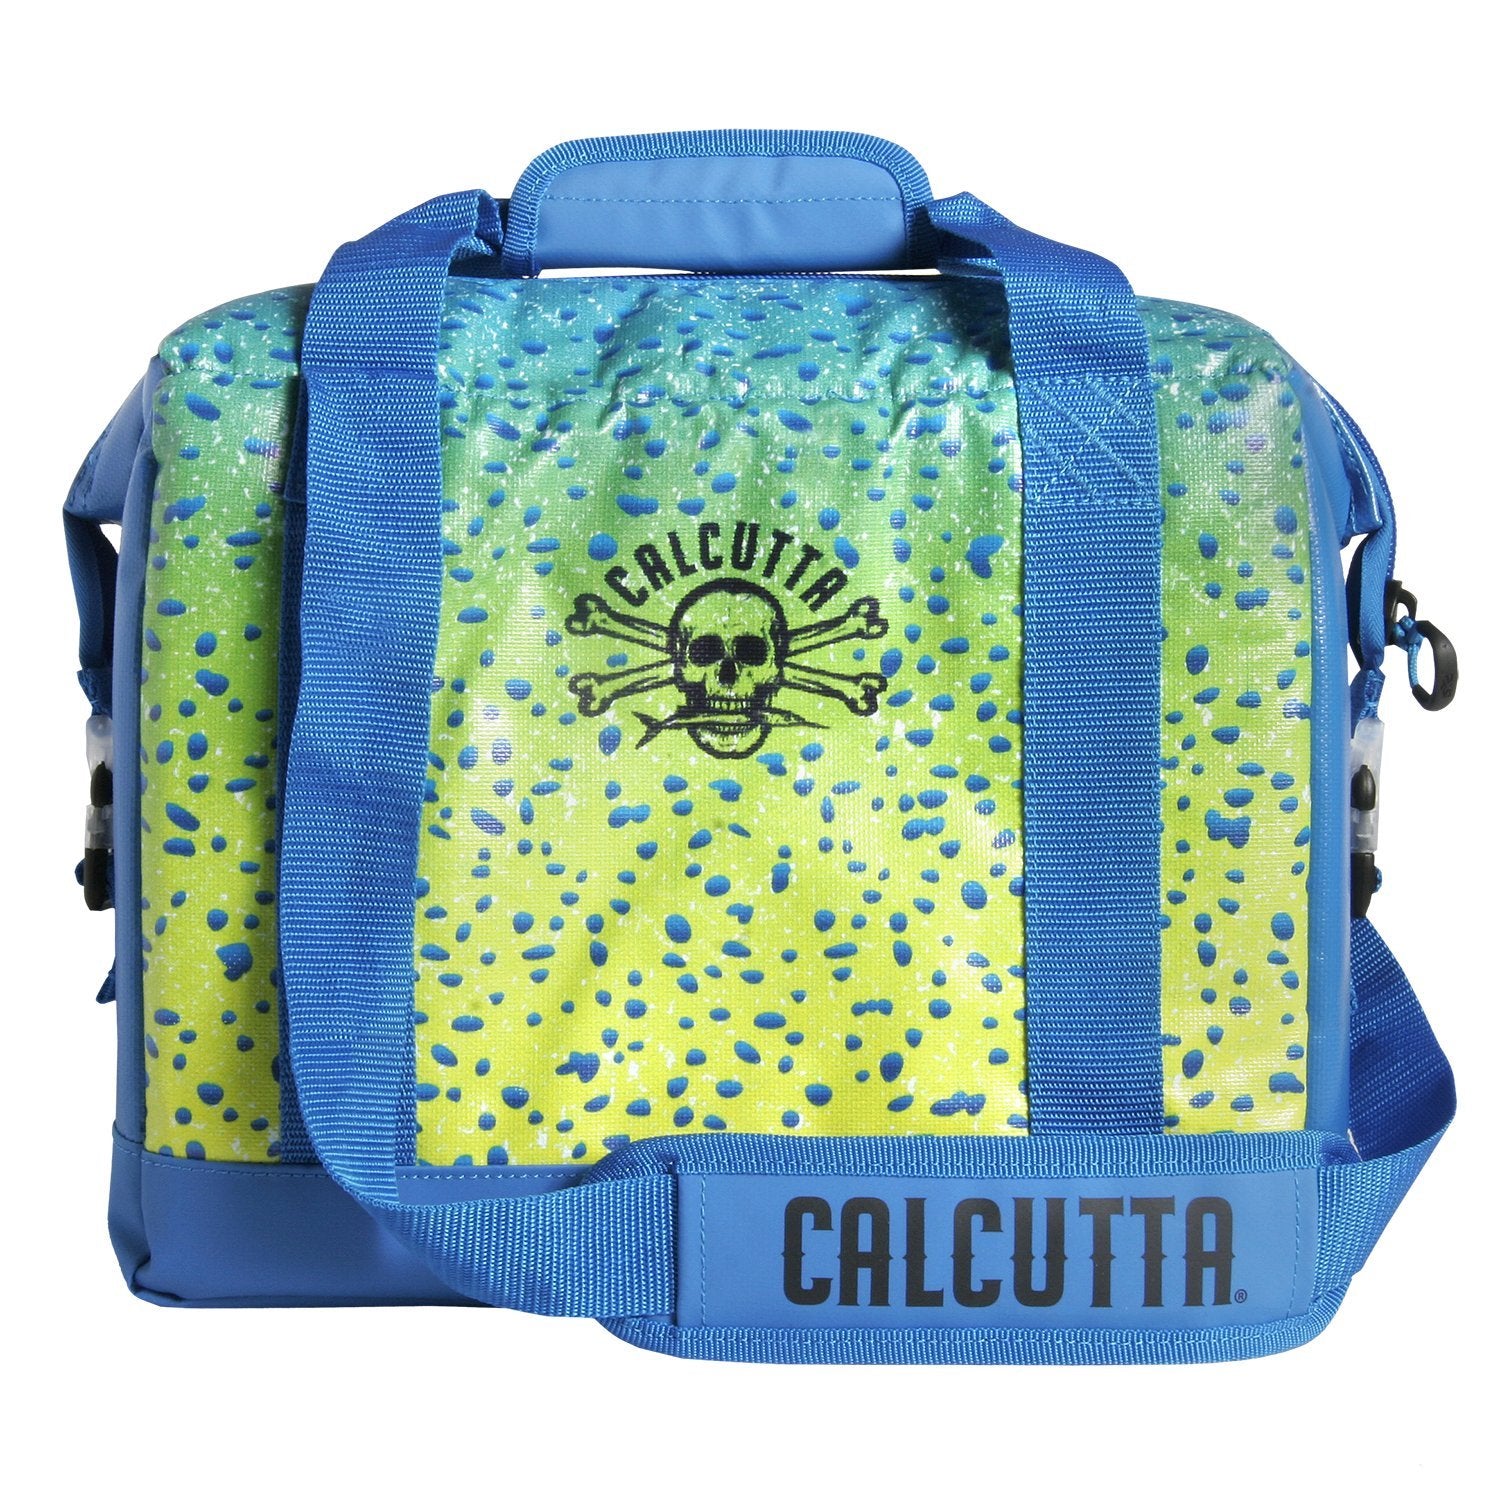 Calcutta 12 pack soft cooler mahi pattern